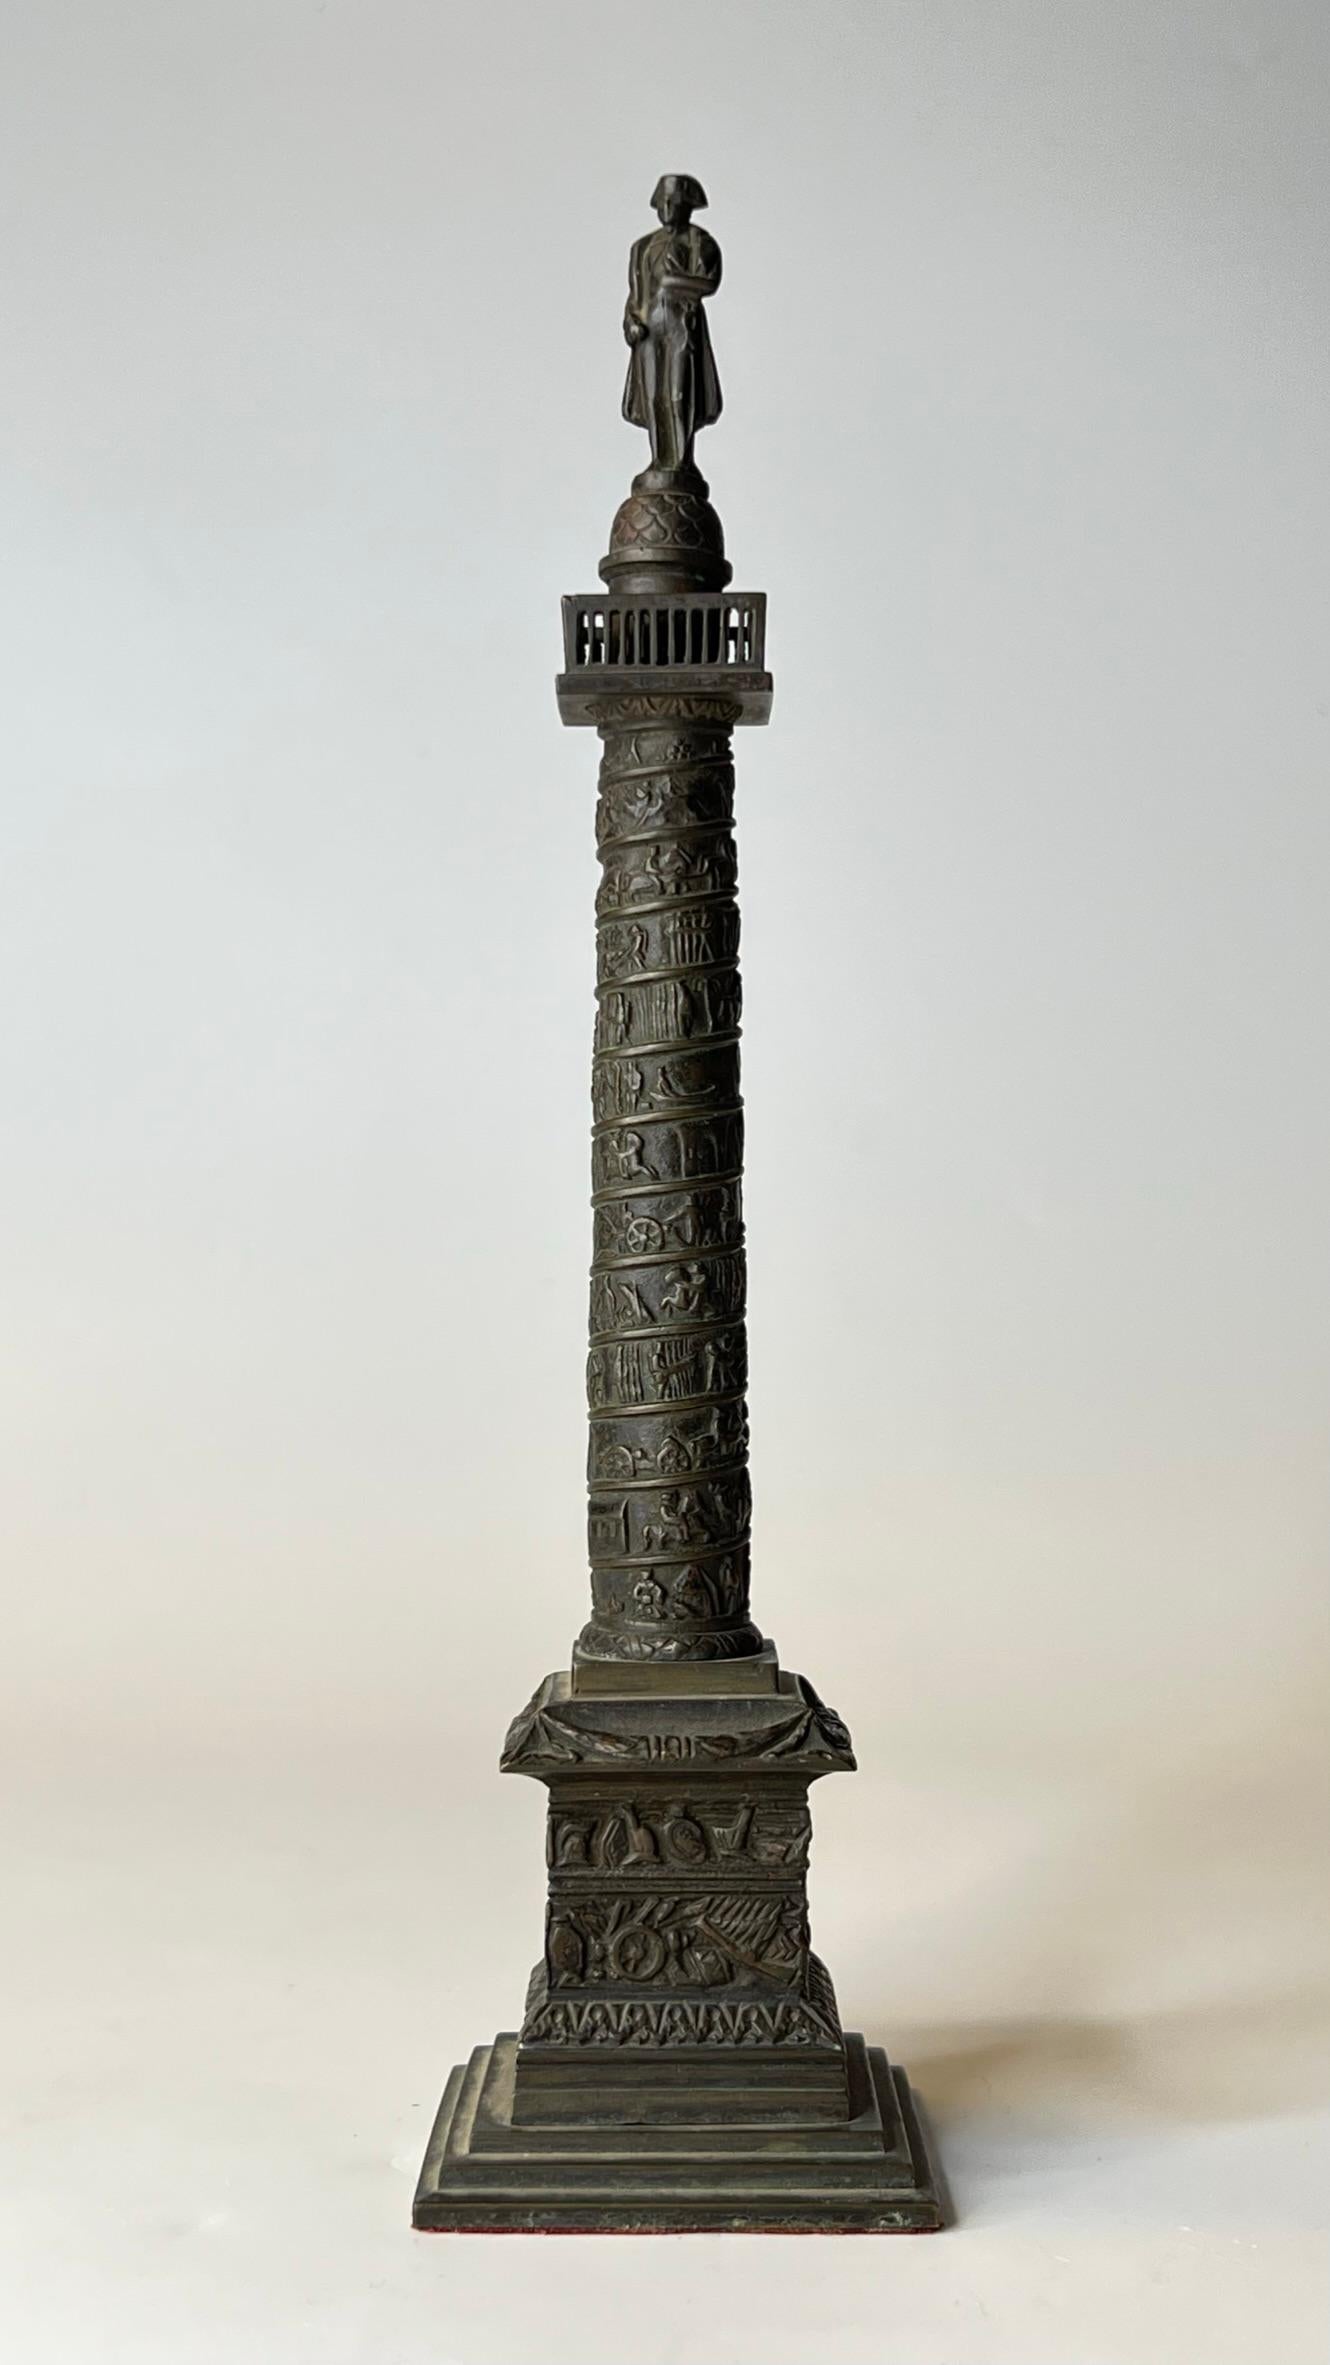 Notre bronze du Grand Tour du 19e siècle représentant la Colonne Vendôme mesure 10 3/8 pouces de haut. L'original a été installé place Vendome à Paris en 1810. Elle a été conçue sur le modèle de la colonne de Trajan pour célébrer la victoire de